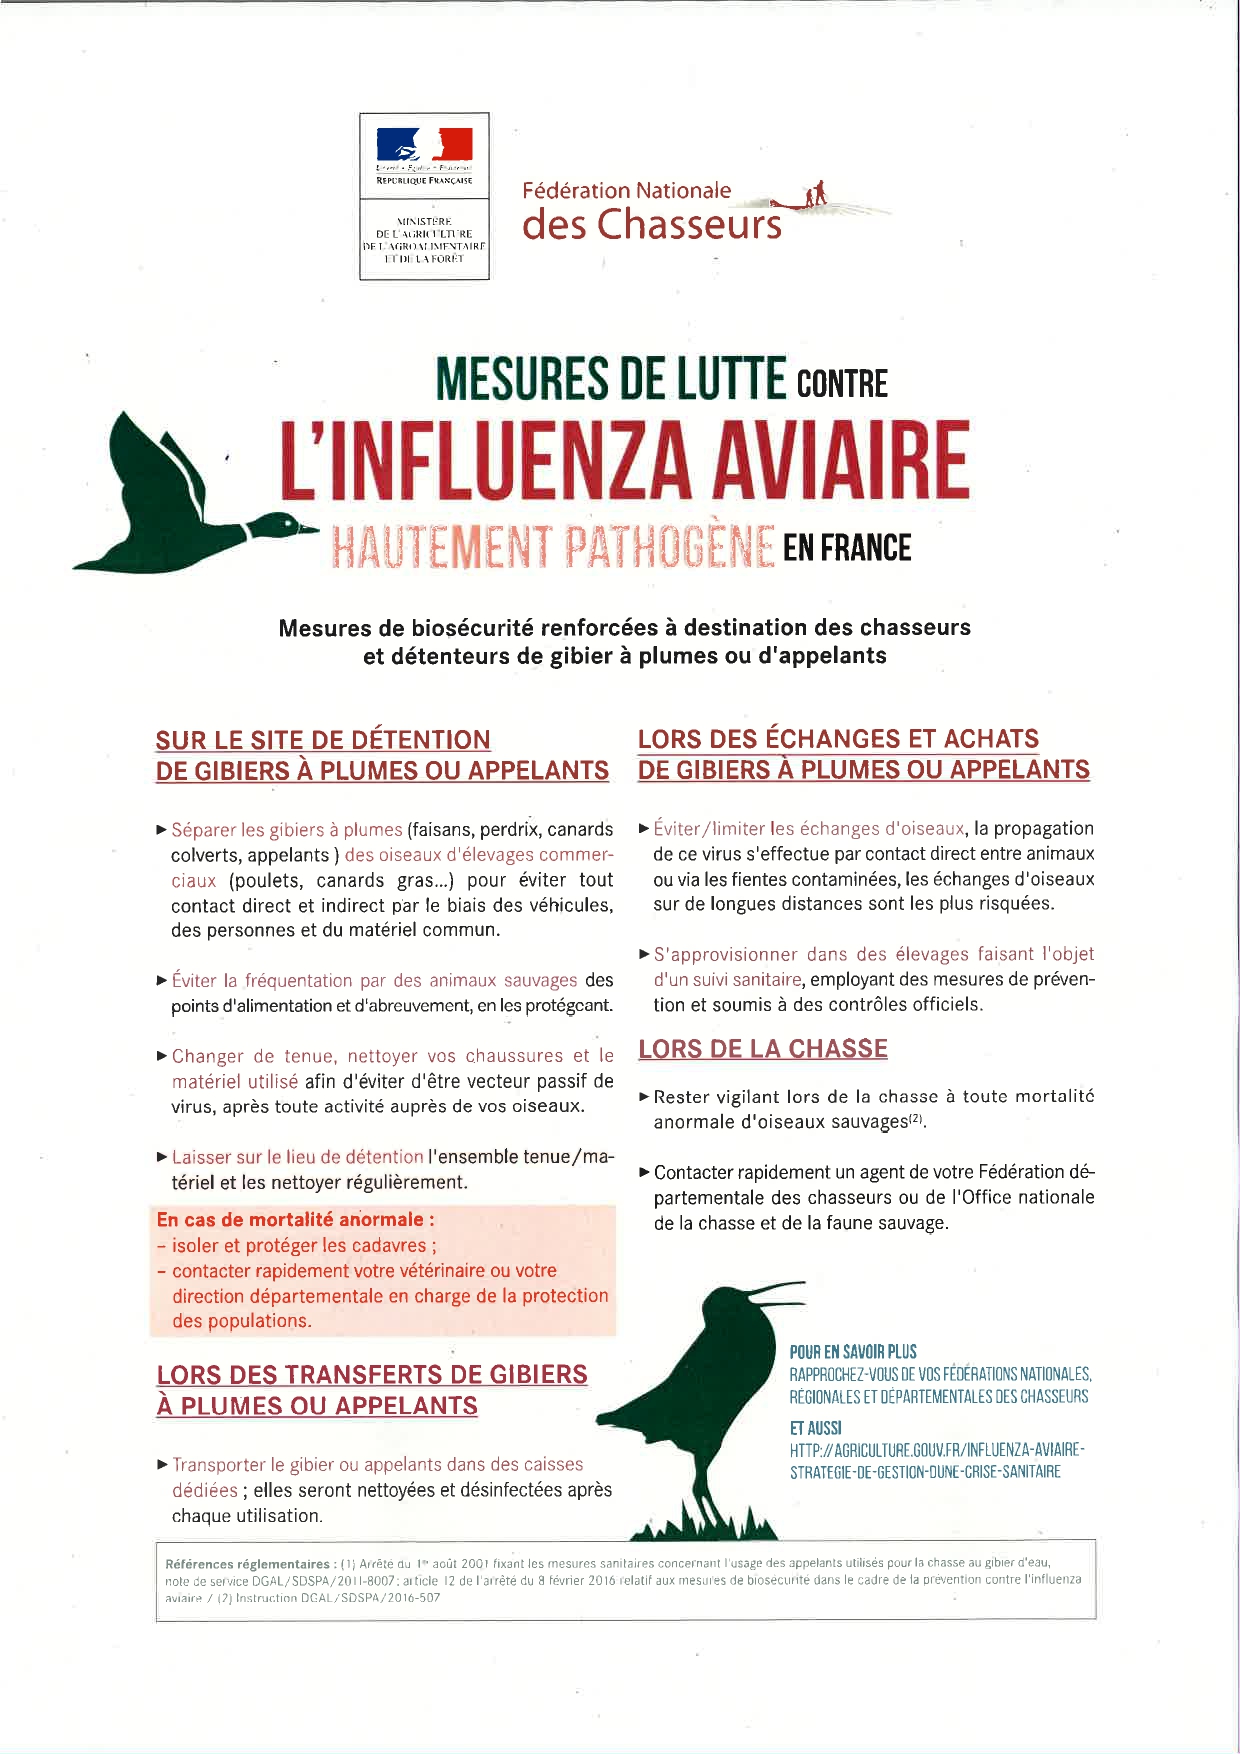 Influenza Aviaire